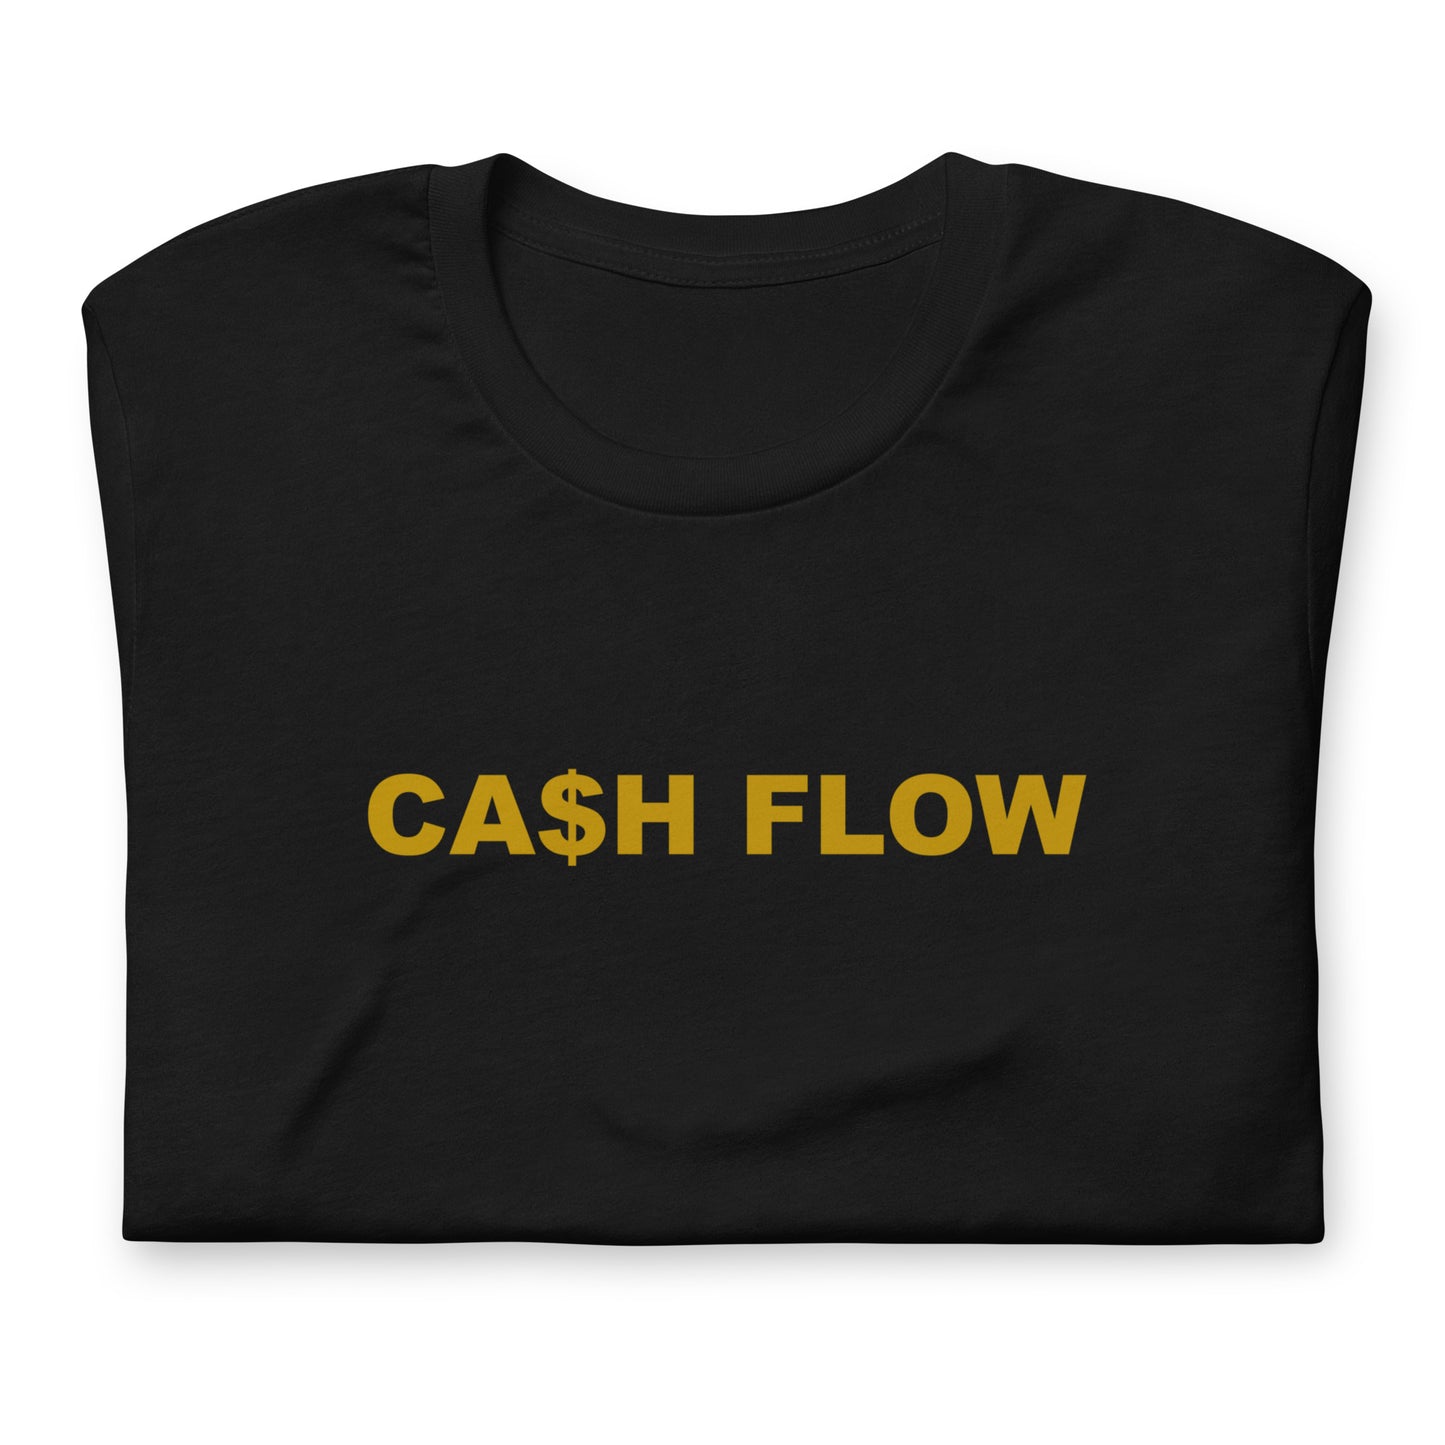 CA$H FLOW - GOLD TEXT - T-SHIRT